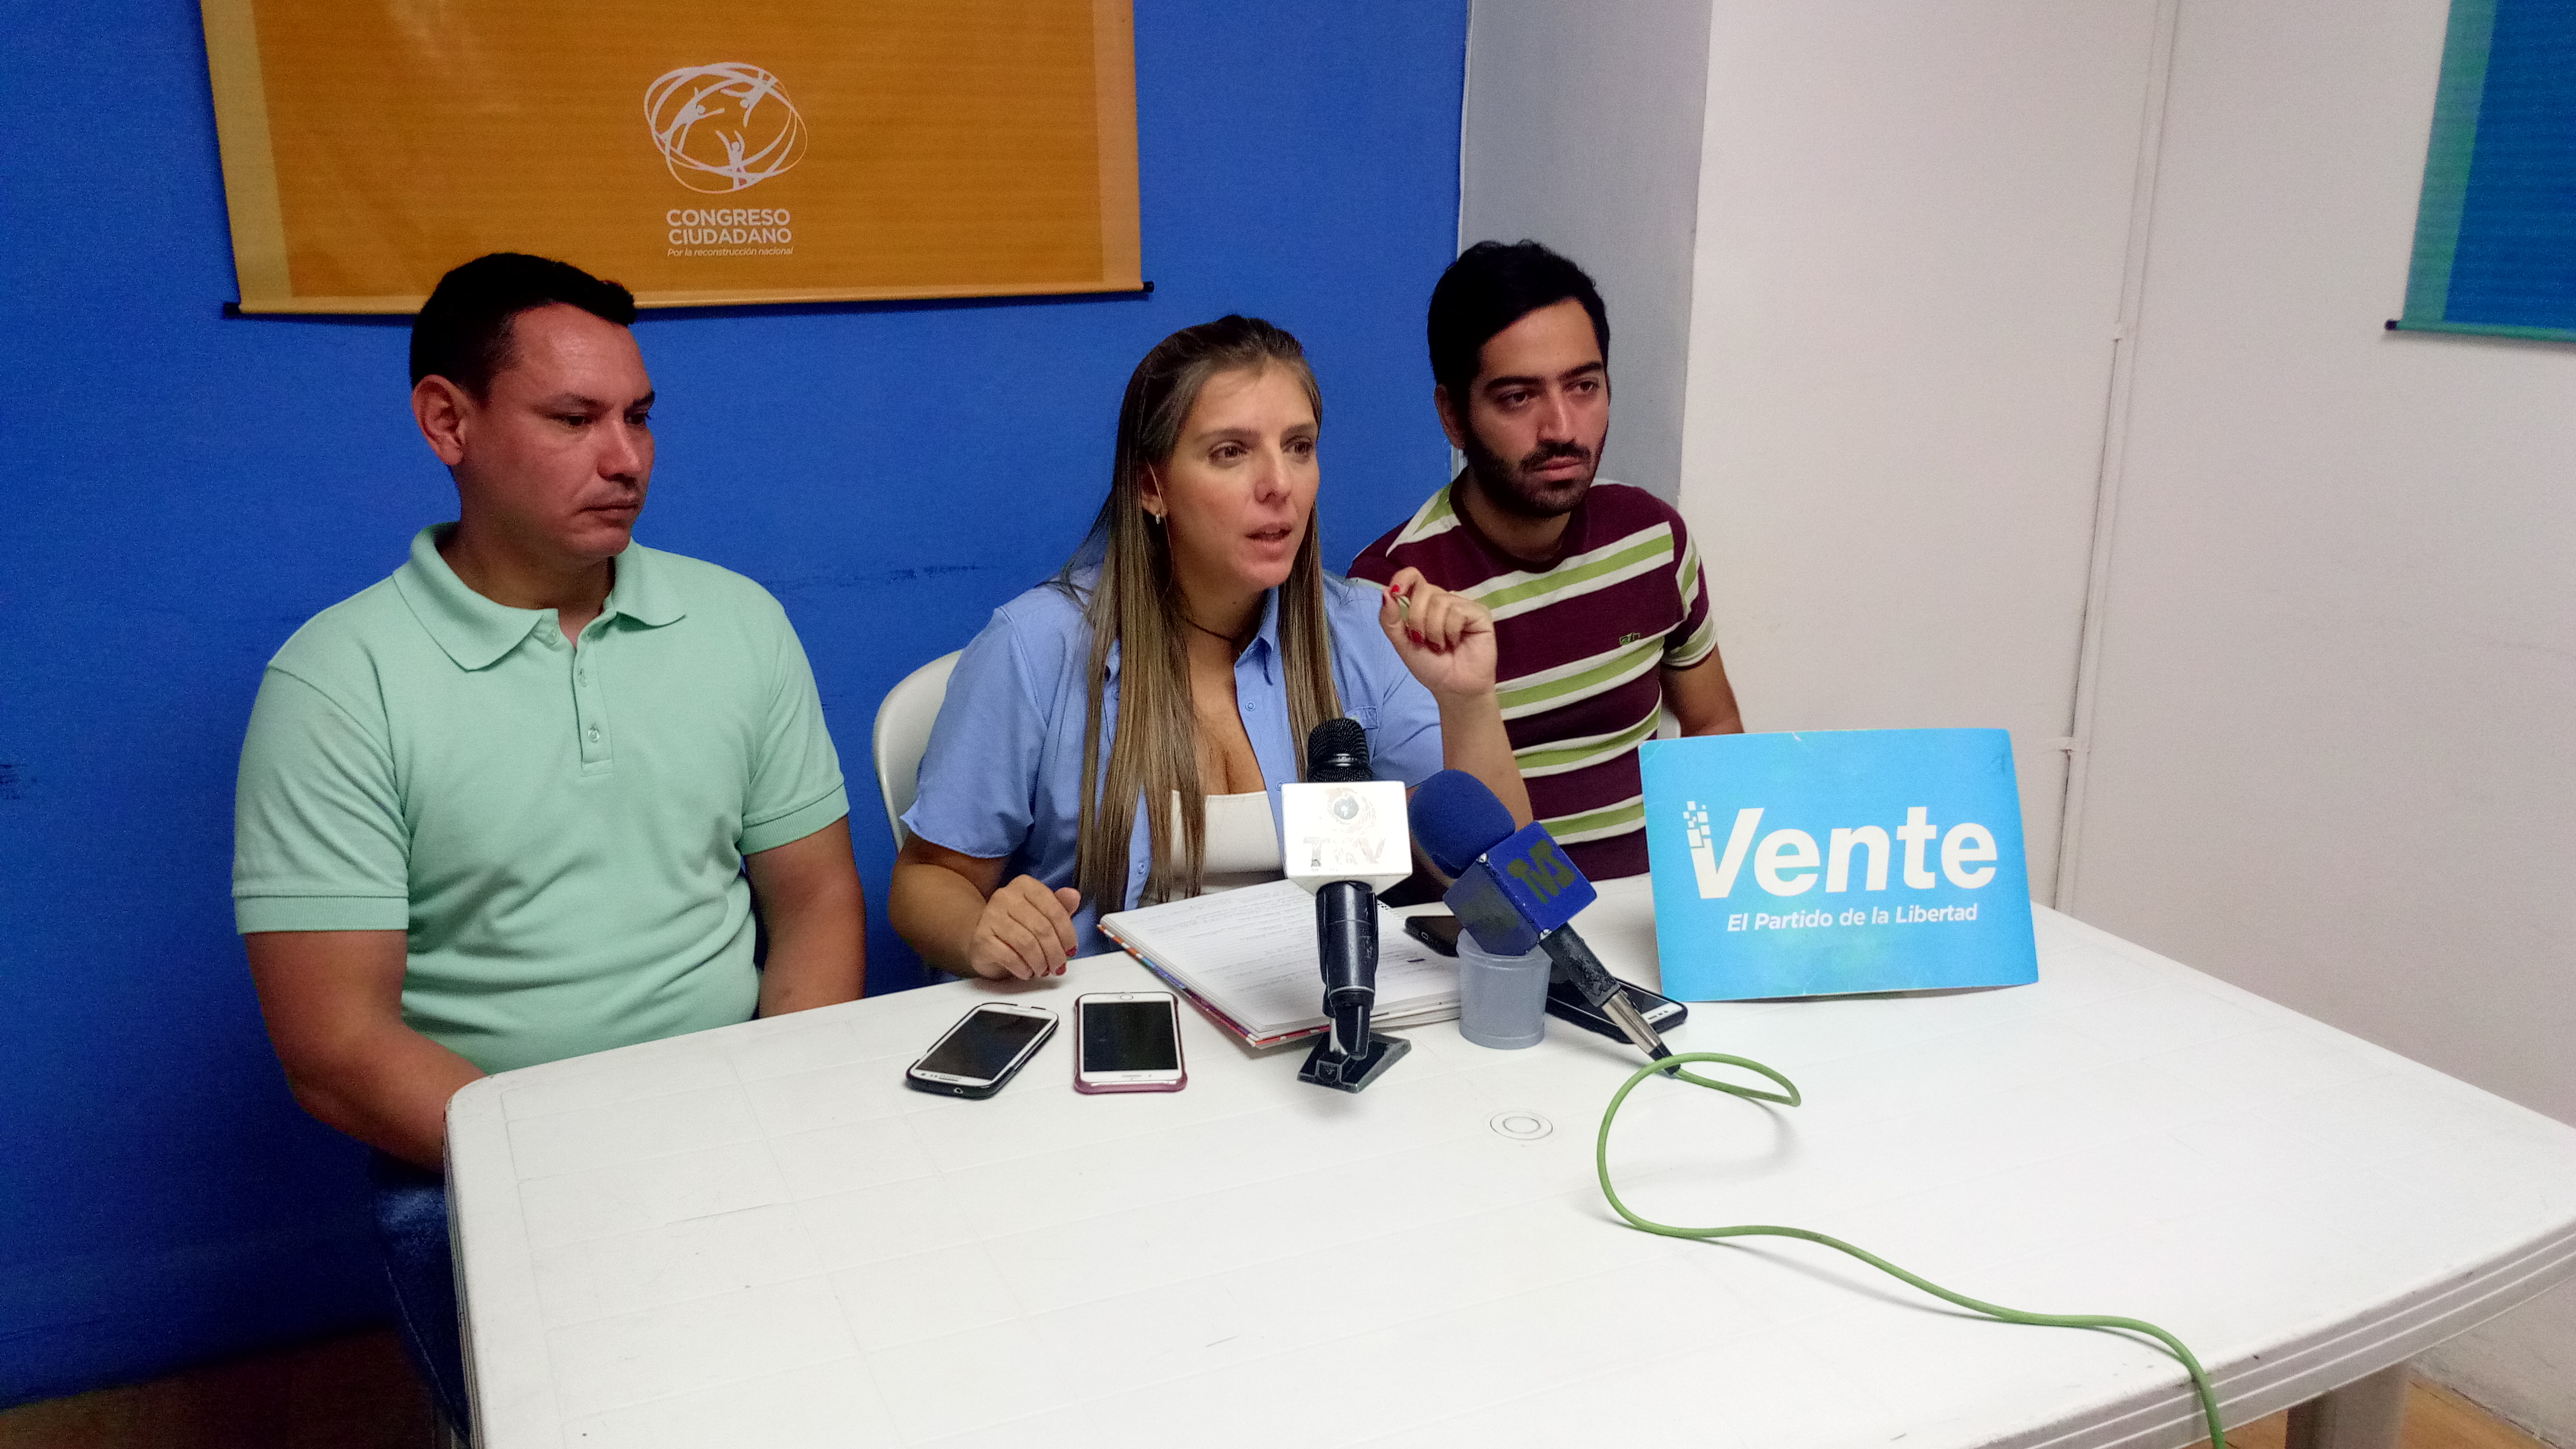 María Teresa Clavijo: No podemos seguir esperando, subestimar las necesidades de los venezolanos es un error incuantificable